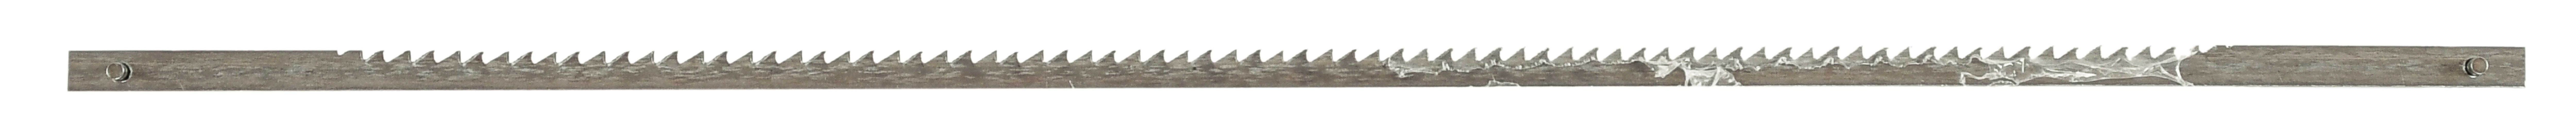 Dekupiersägeblätter für Holz, 162 mm 1Stück